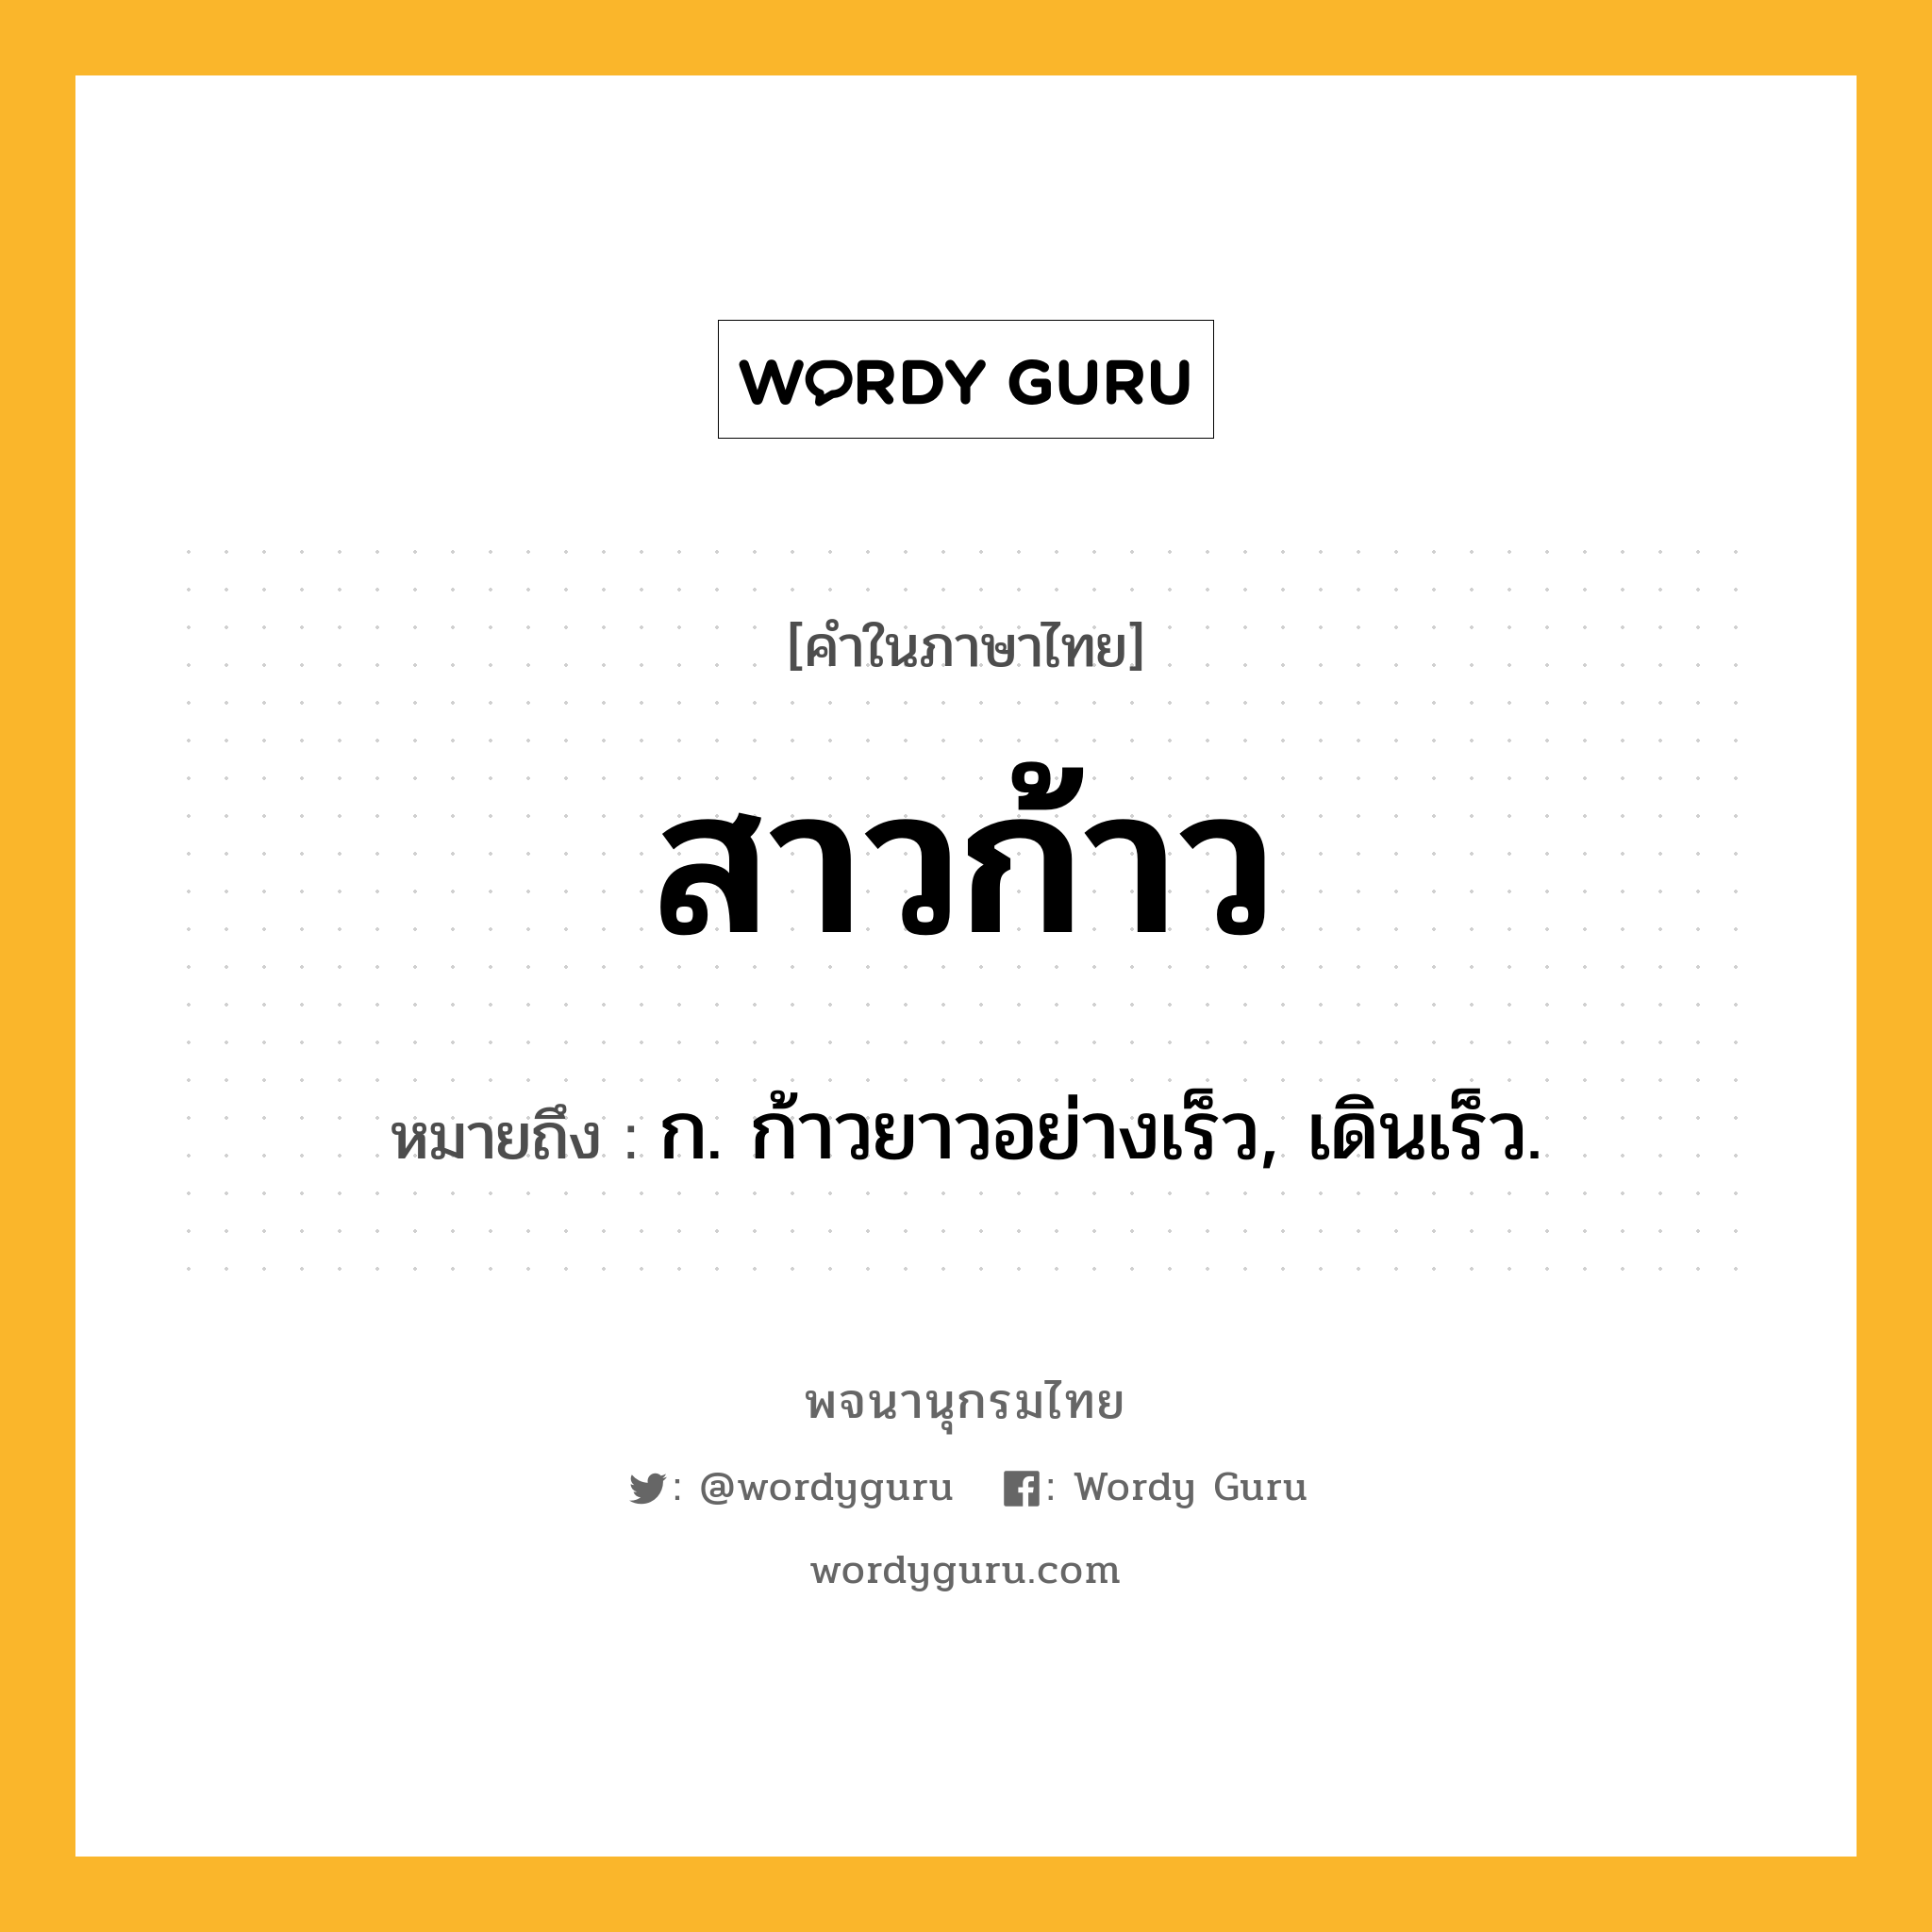 สาวก้าว ความหมาย หมายถึงอะไร?, คำในภาษาไทย สาวก้าว หมายถึง ก. ก้าวยาวอย่างเร็ว, เดินเร็ว.